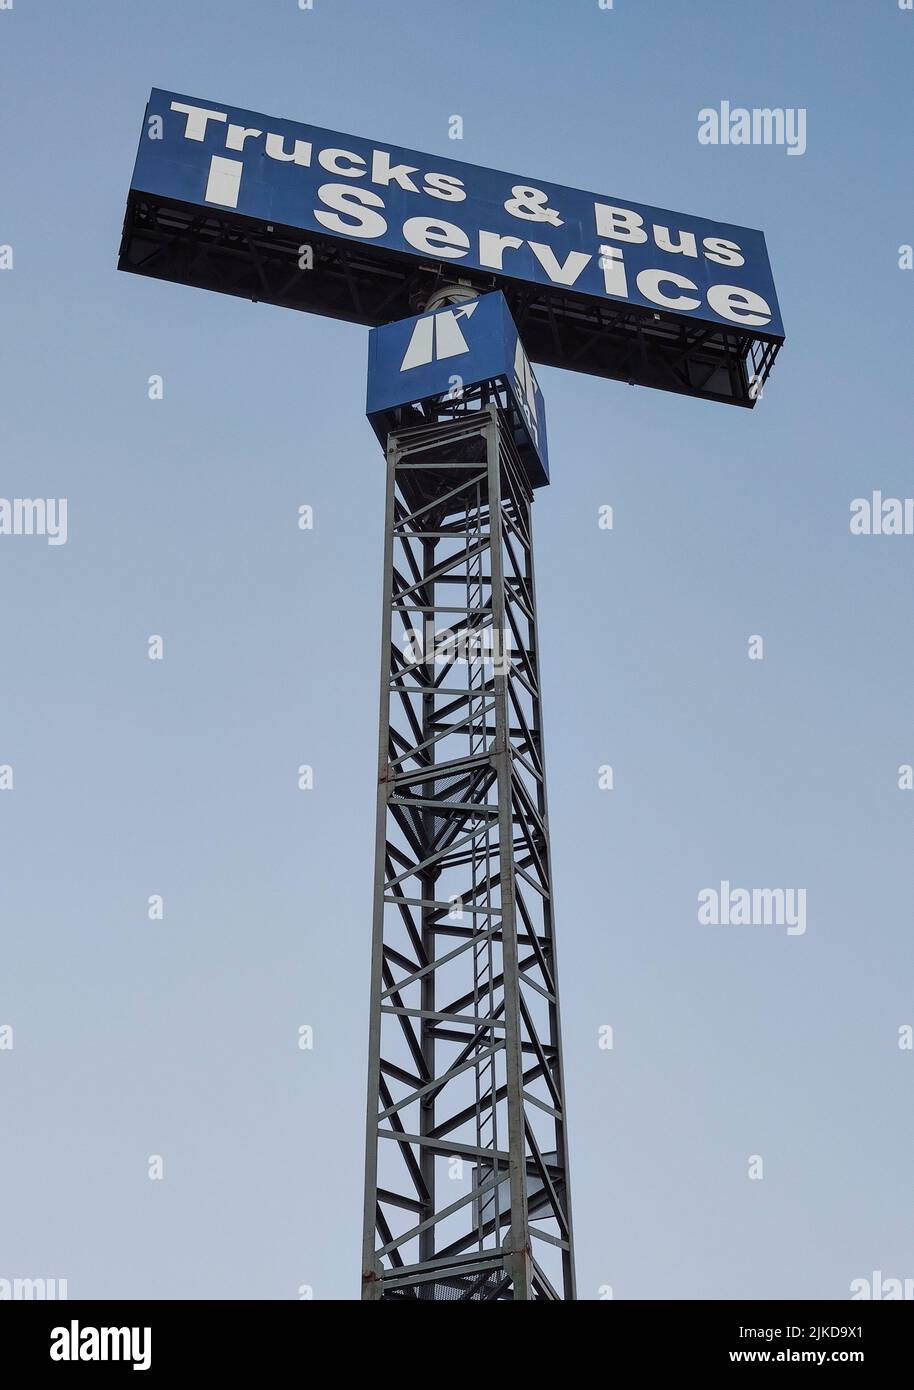 Poste de señal de servicio de camiones y autobuses sobre el cielo azul. Foto de stock